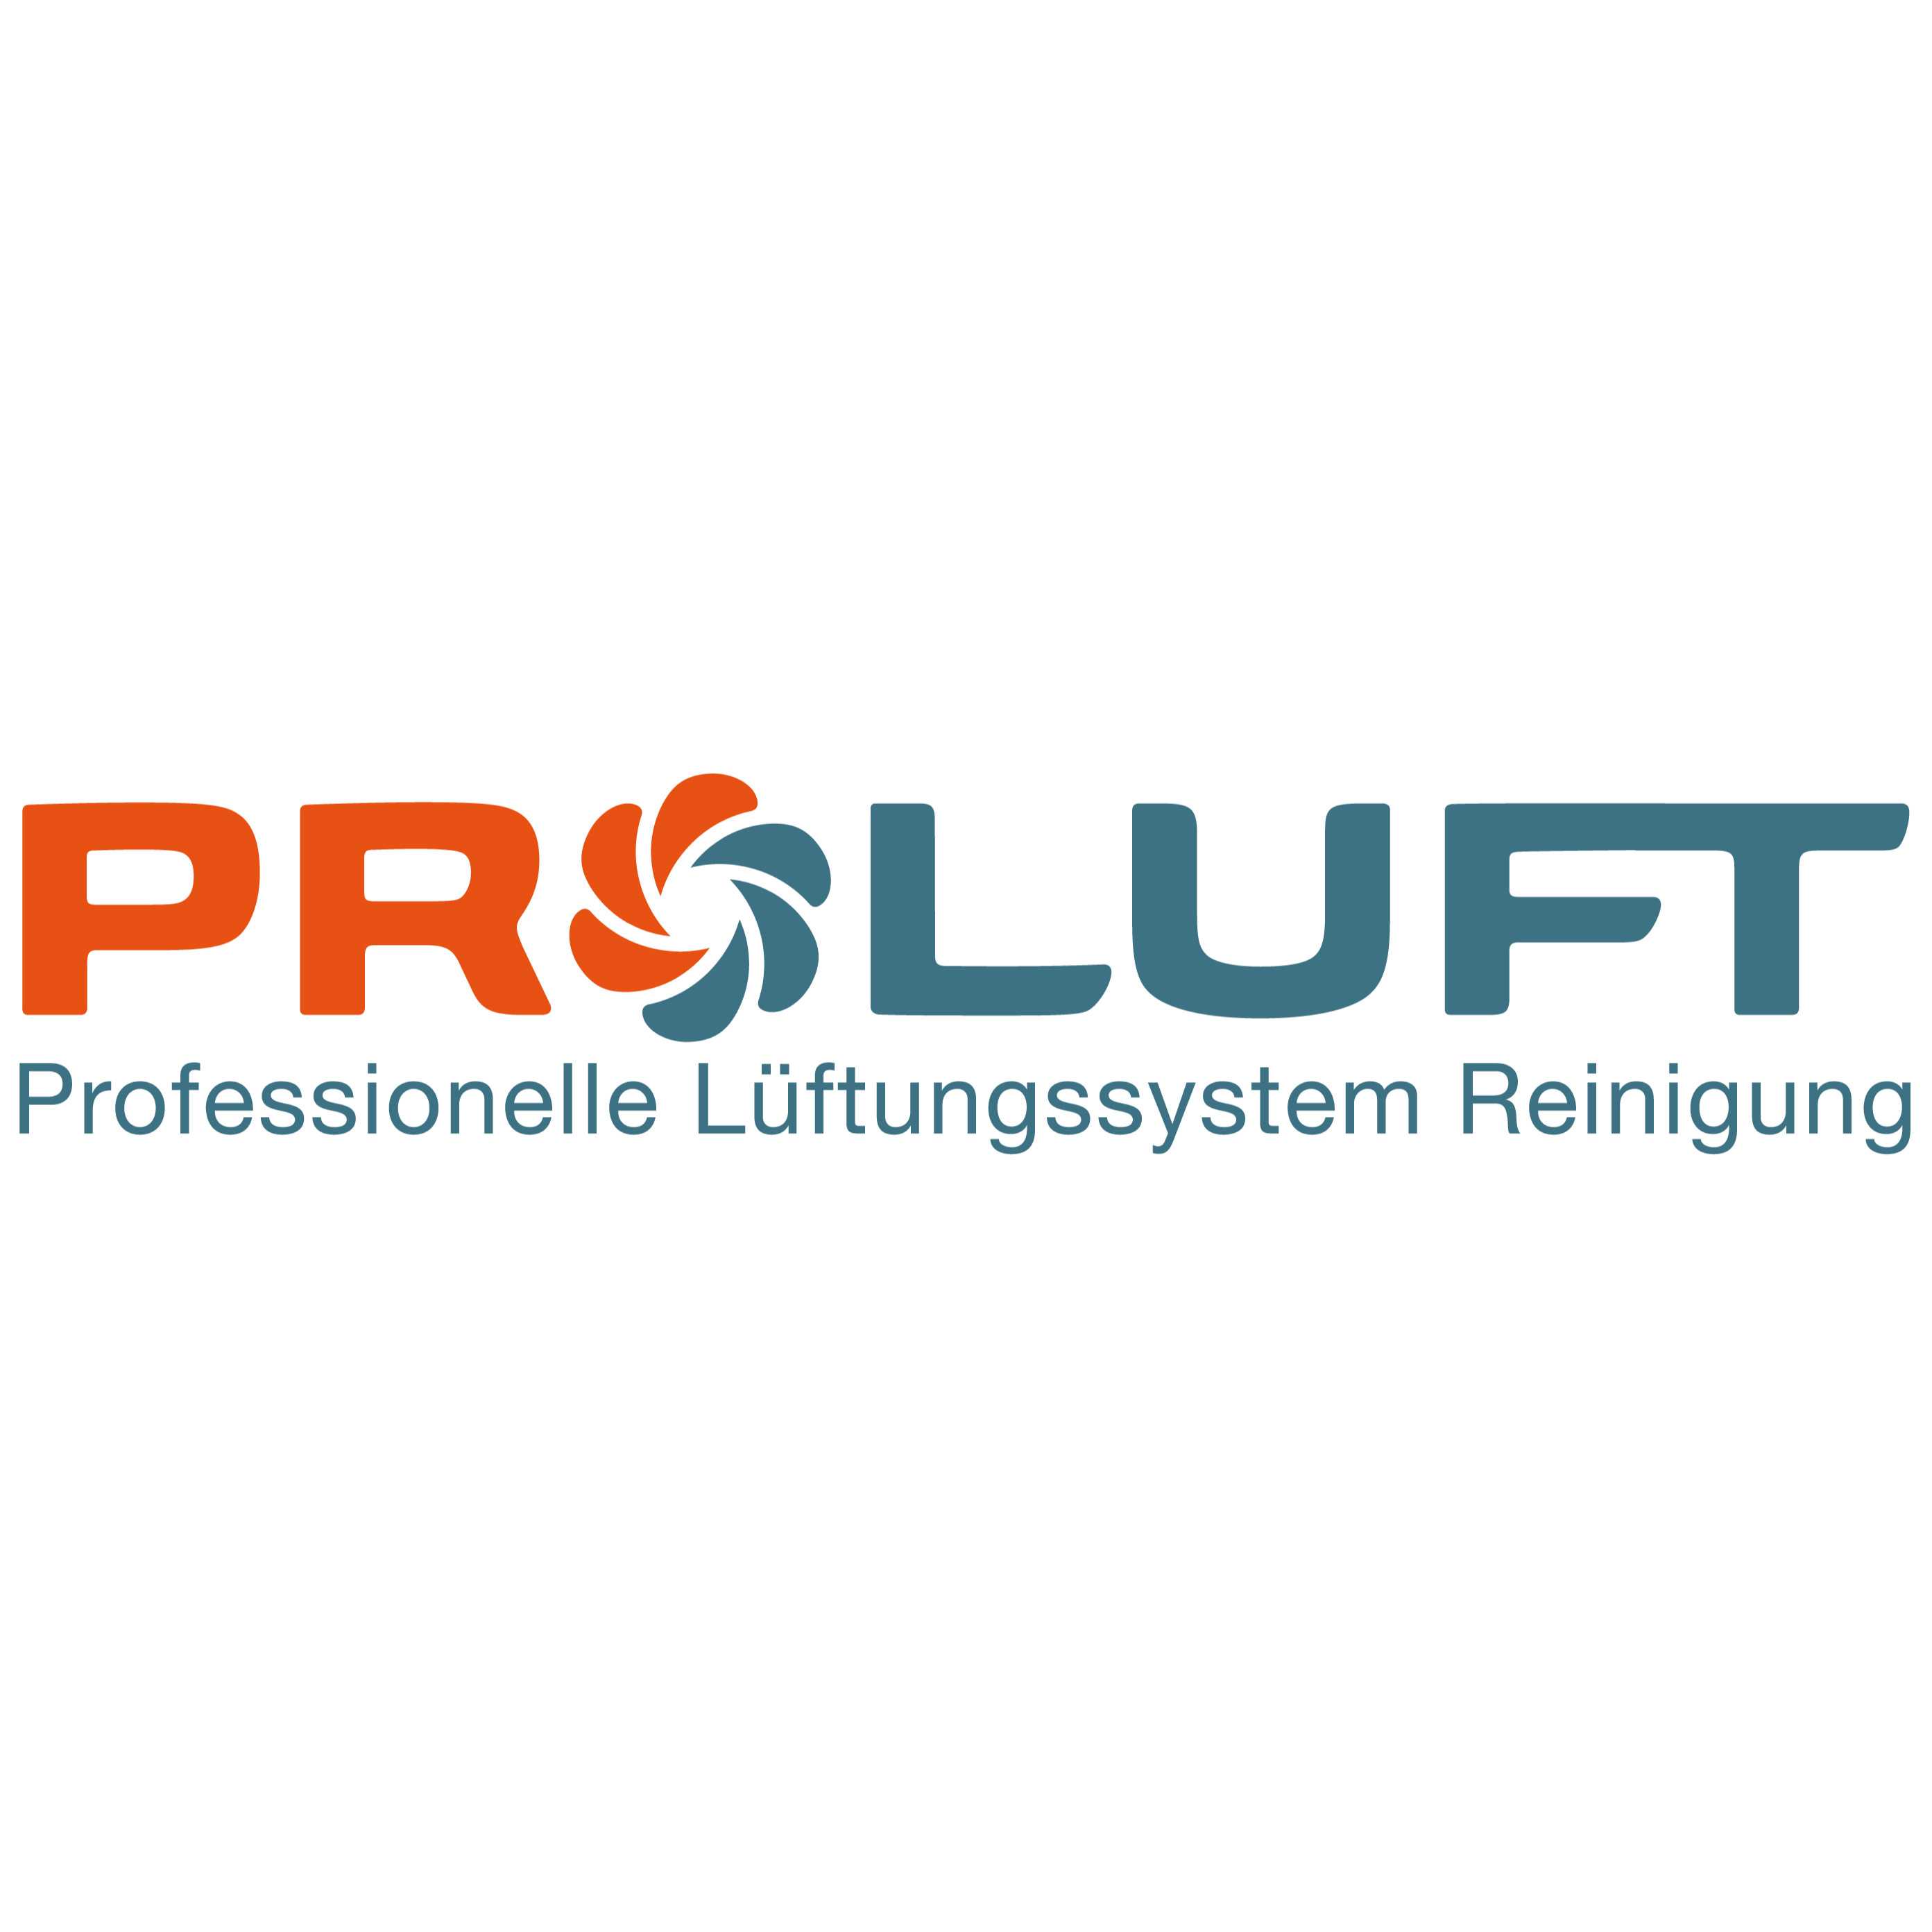 PROLUFT Professionelle Lüftungssystem Reinigungs GmbH